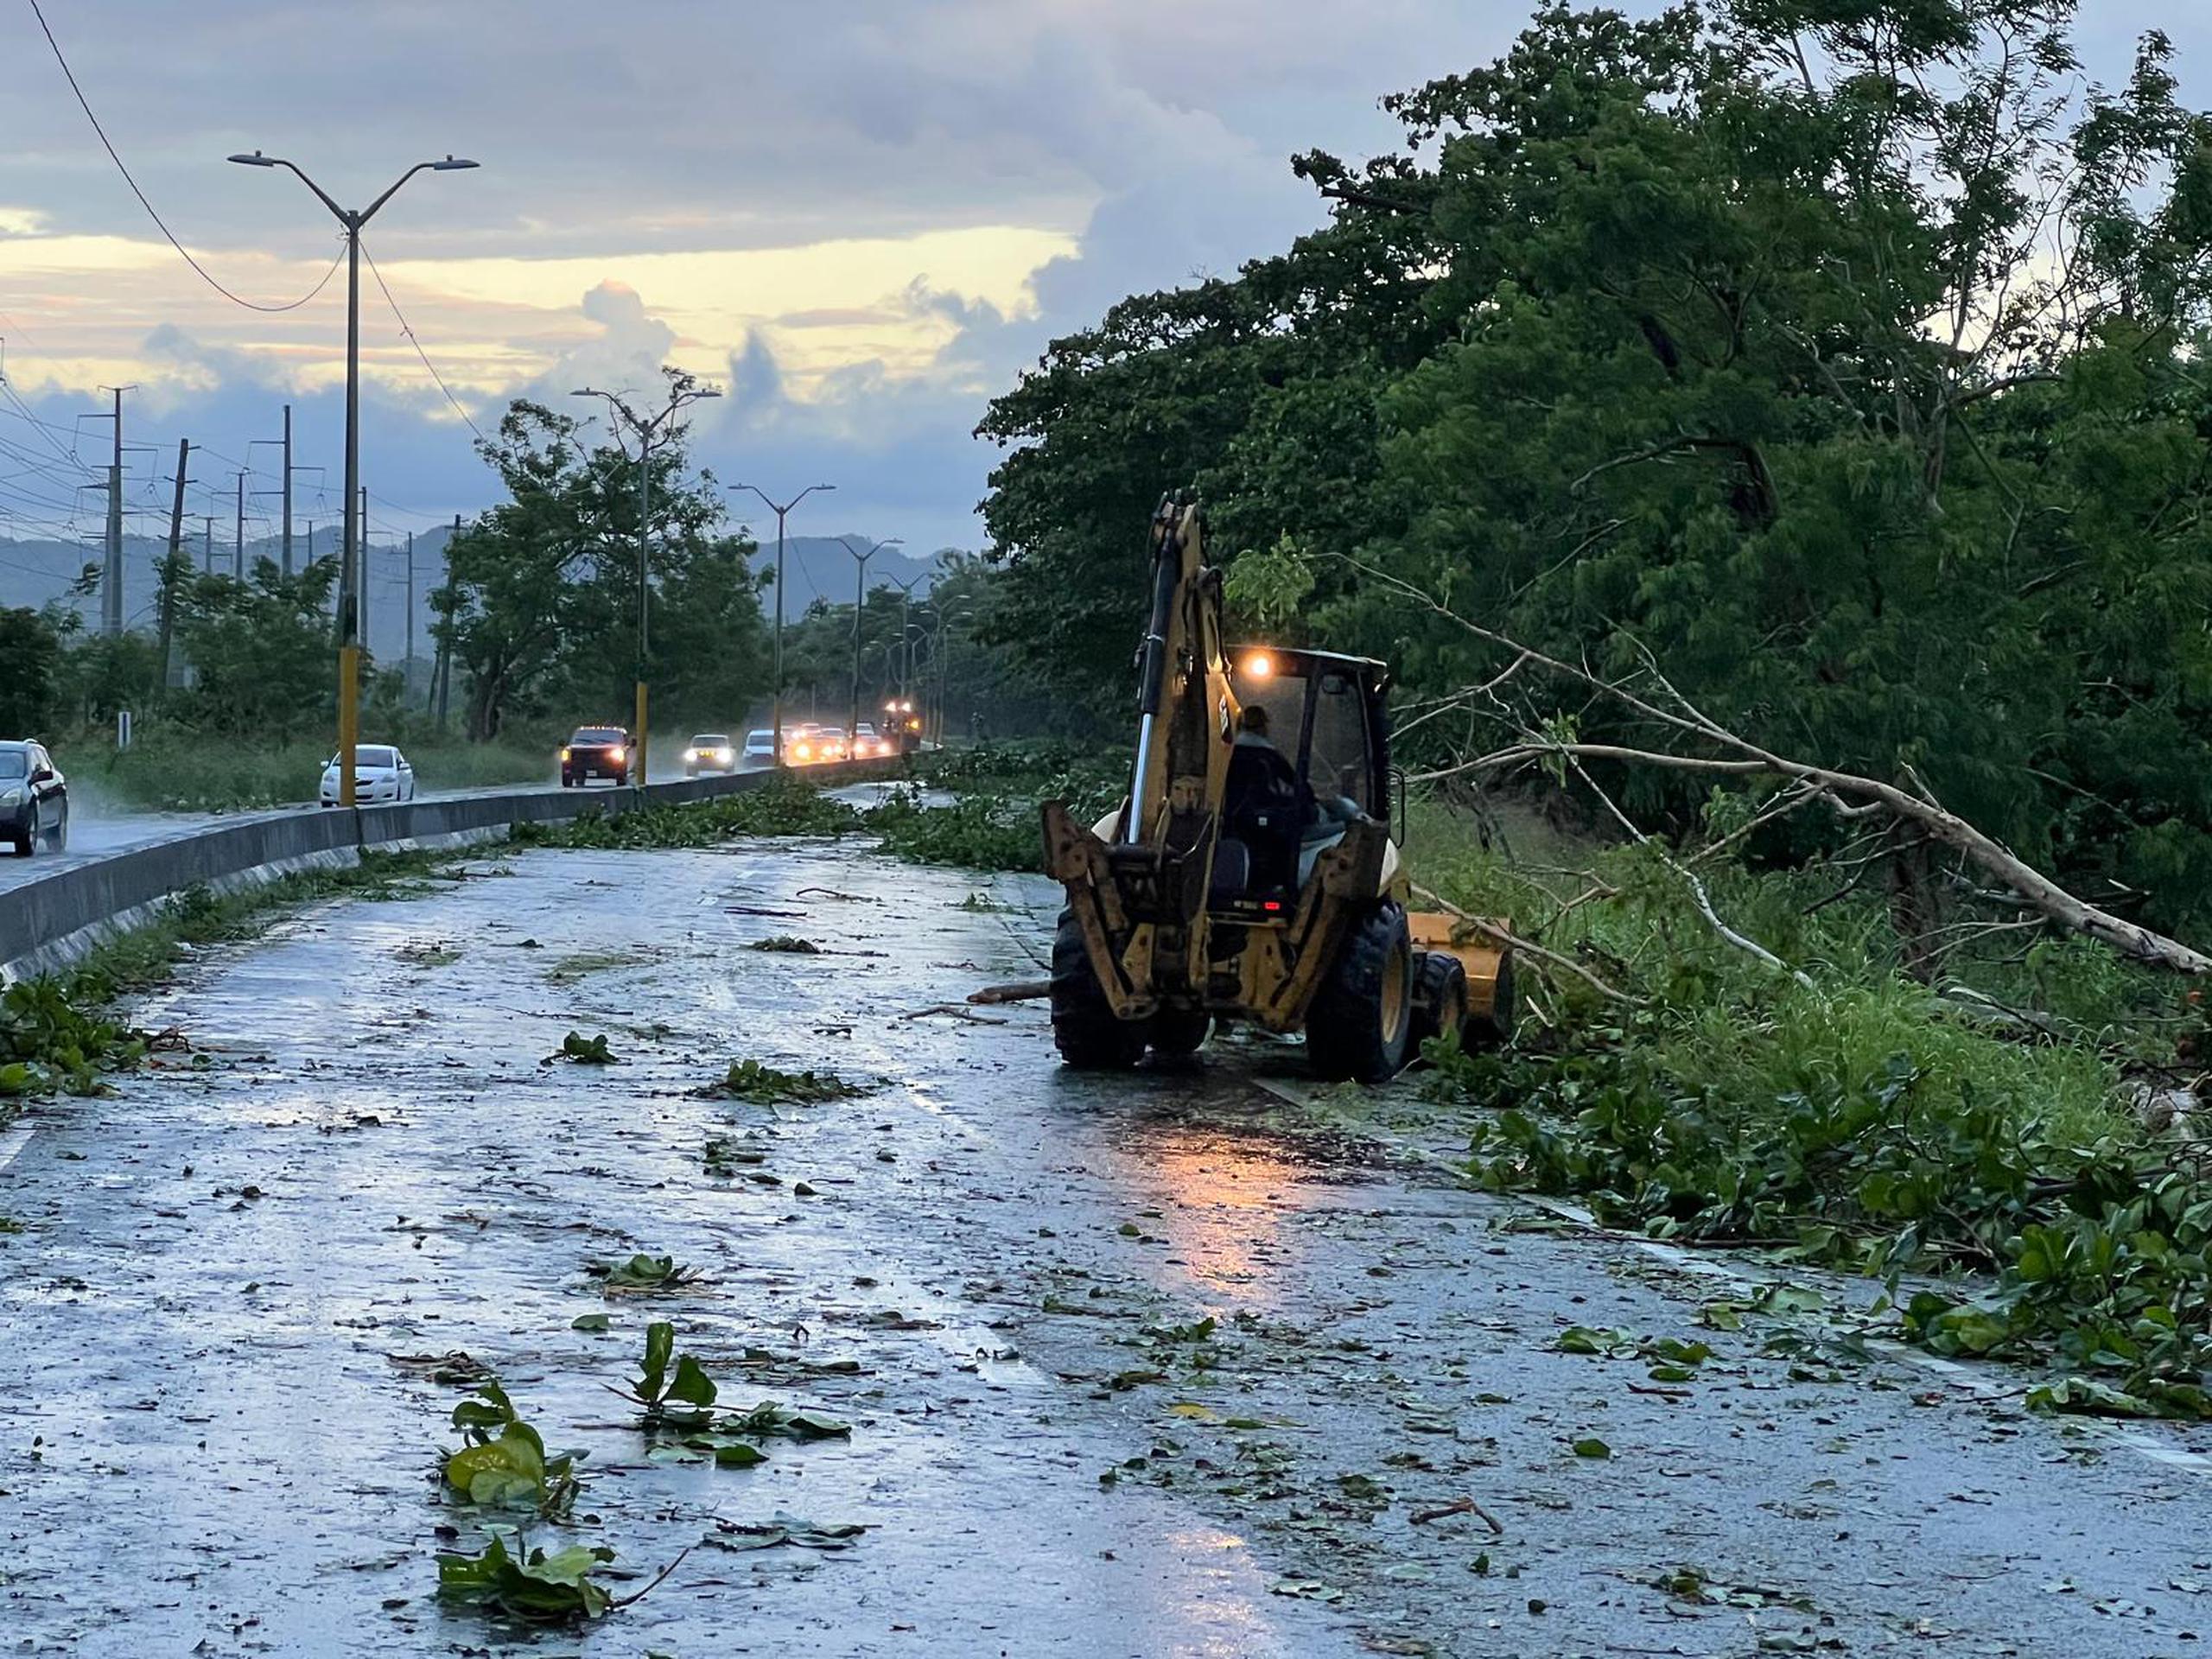 Brigadas municipales realizaban labores de limpieza luego que varios árboles cayeran sobre el pavimento, obstruyendo la carretera PR-2 a la altura de Cambalache en Arecibo.